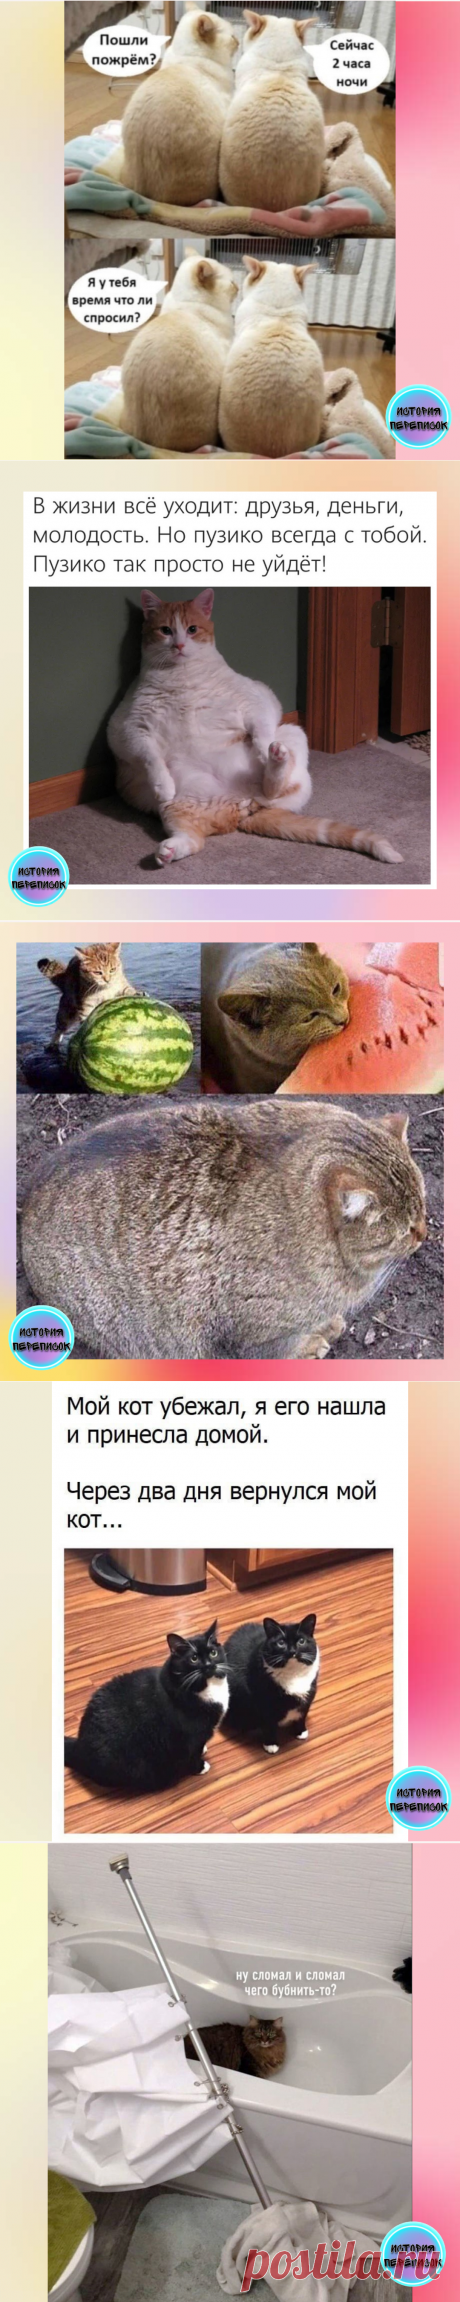 Топ 10 кото-мемов для отличного настроения | История переписок | Яндекс Дзен